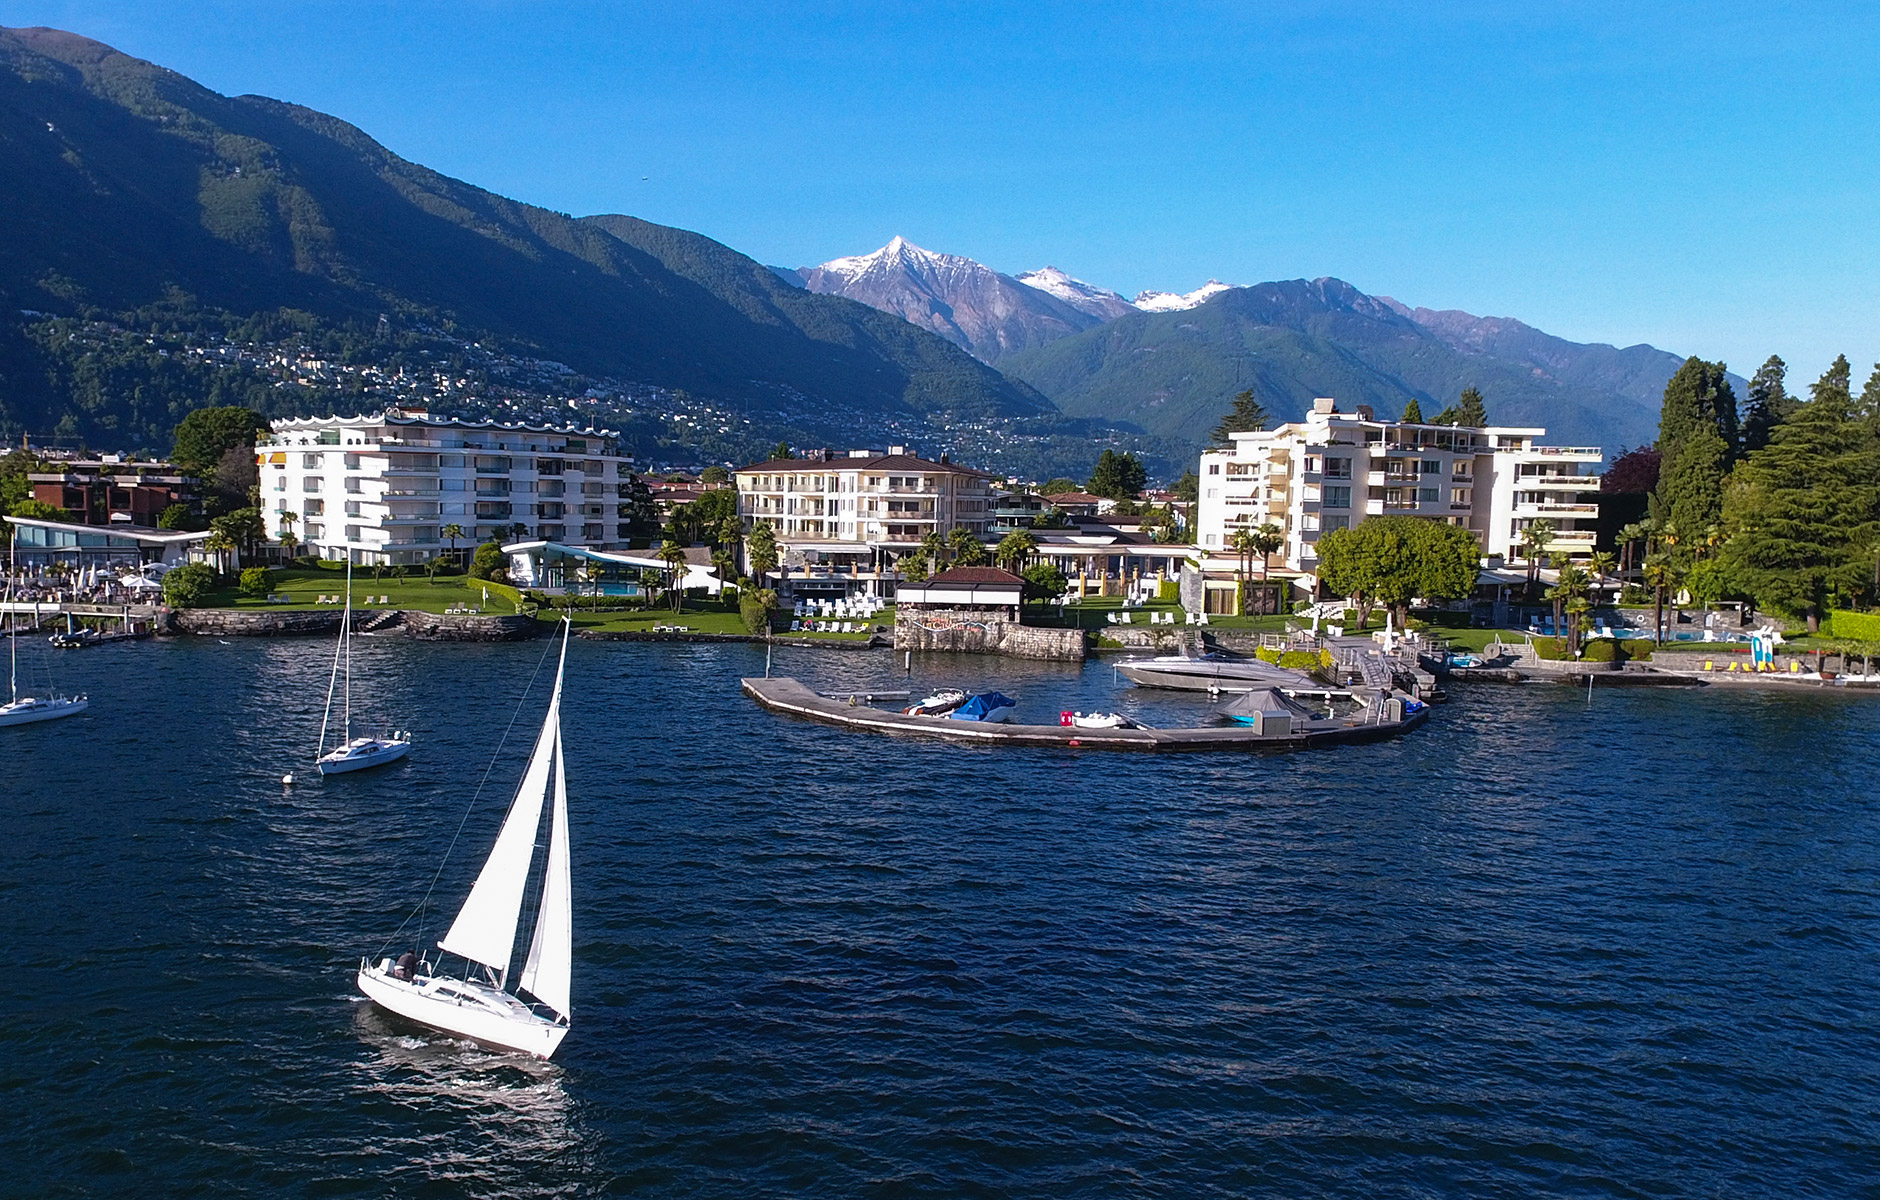 Blick auf die Hotelanlage über den Lago Maggiore